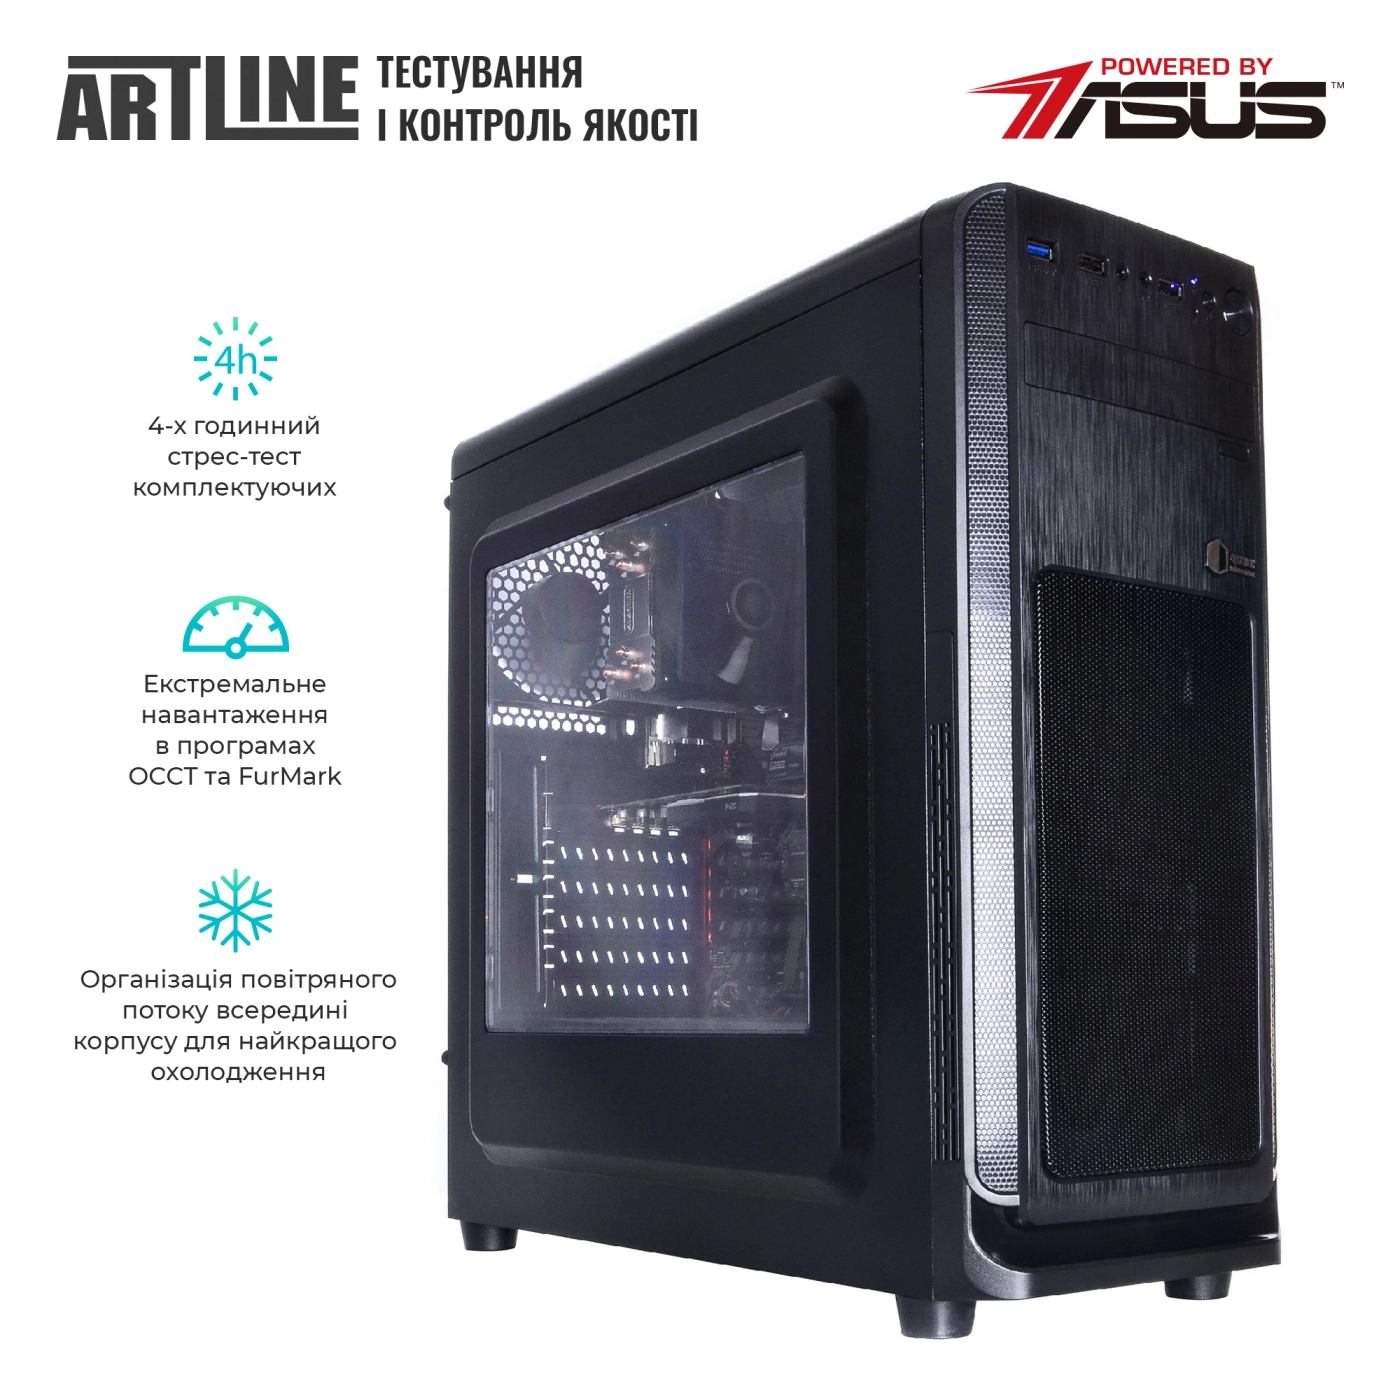 Купить Сервер ARTLINE Business T61v09 - фото 6